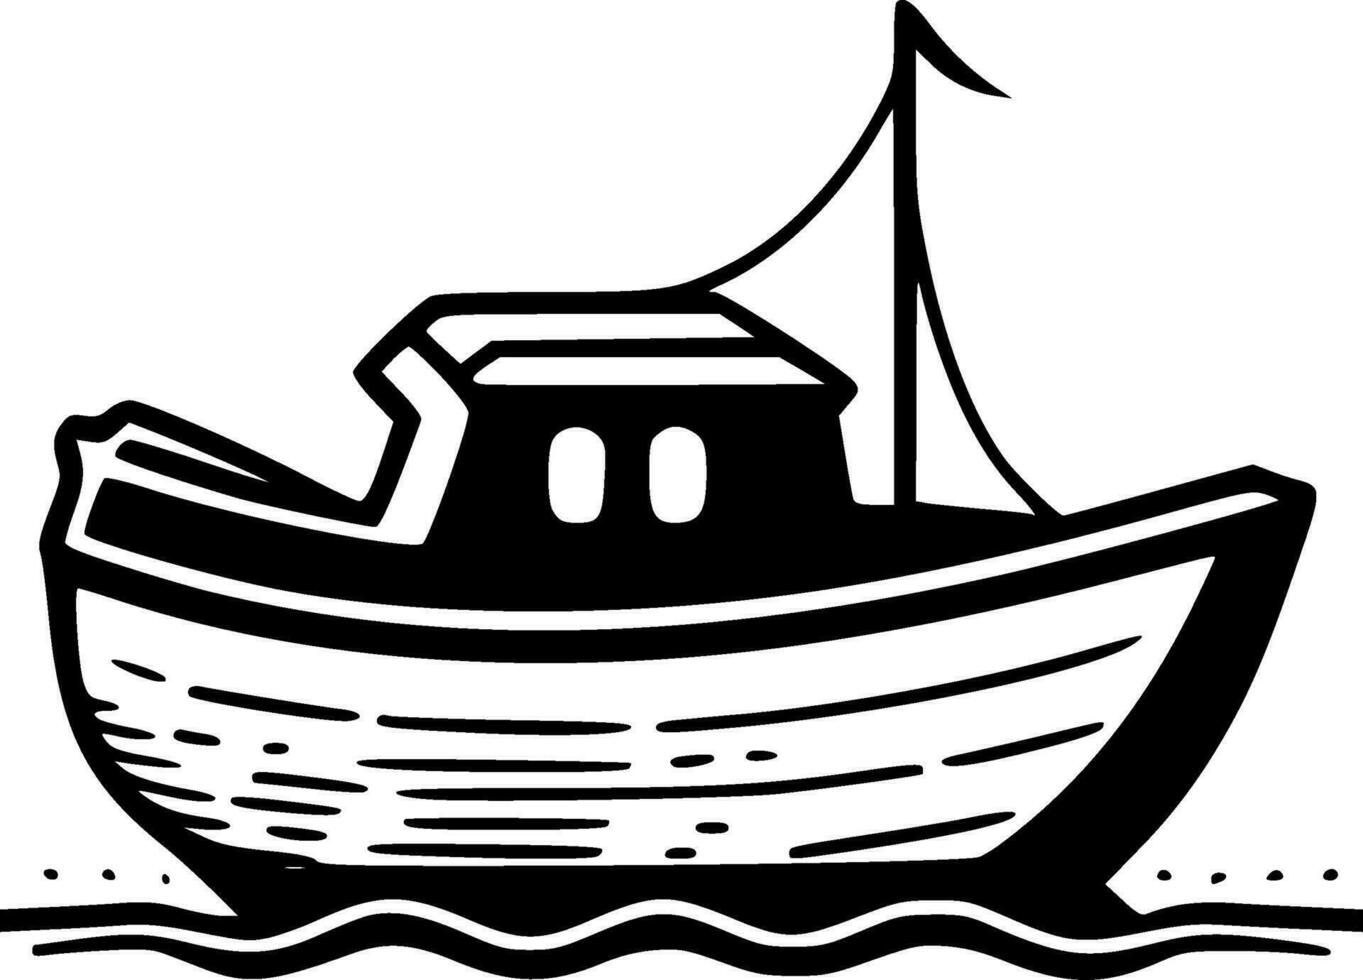 barco, minimalista e simples silhueta - vetor ilustração